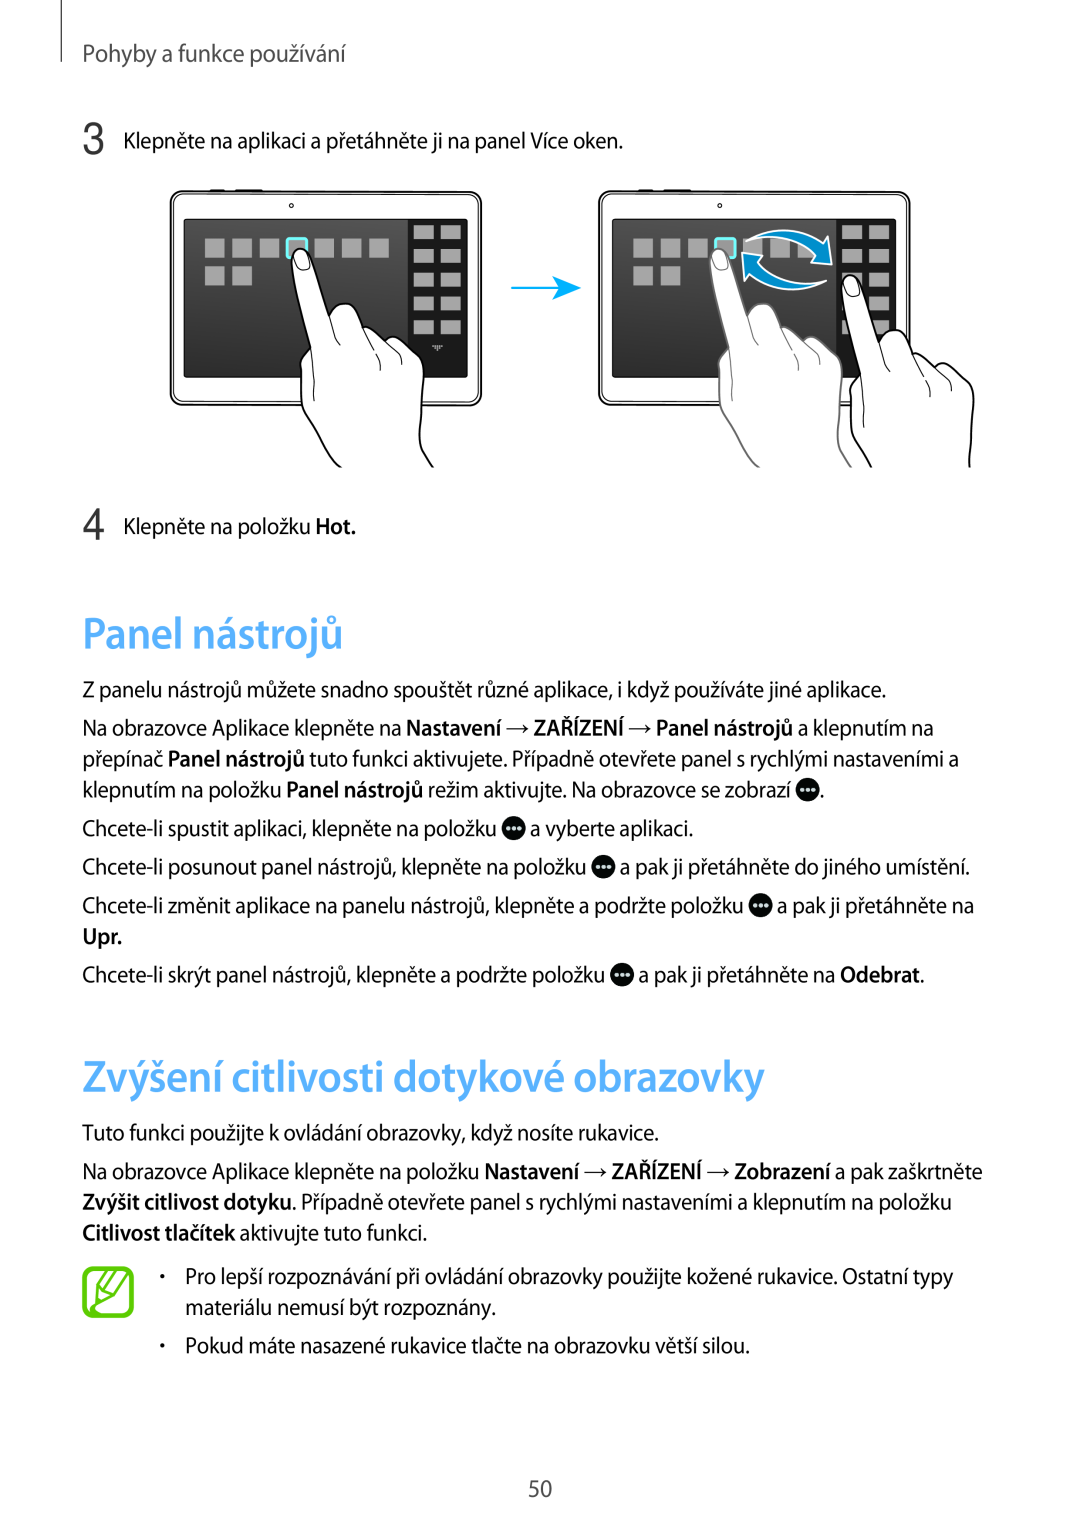 Samsung SM-T705NTSATMH, SM-T805NZWAXEO Panel nástrojů, Zvýšení citlivosti dotykové obrazovky, Pohyby a funkce používání 